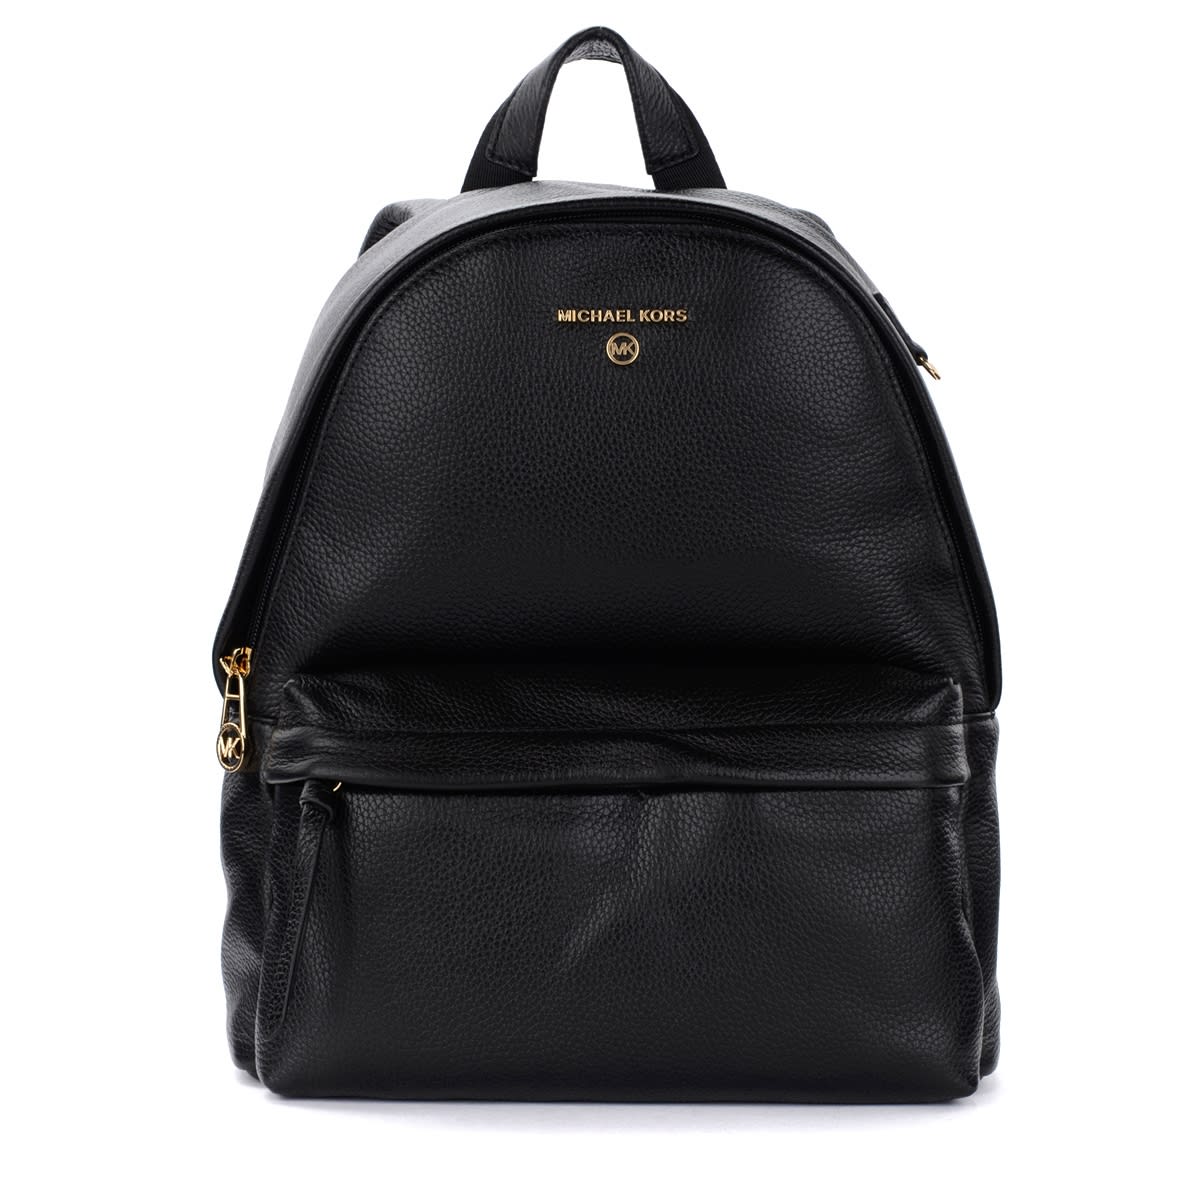 Michael Kors Slater Medium Backpack In Black Leather